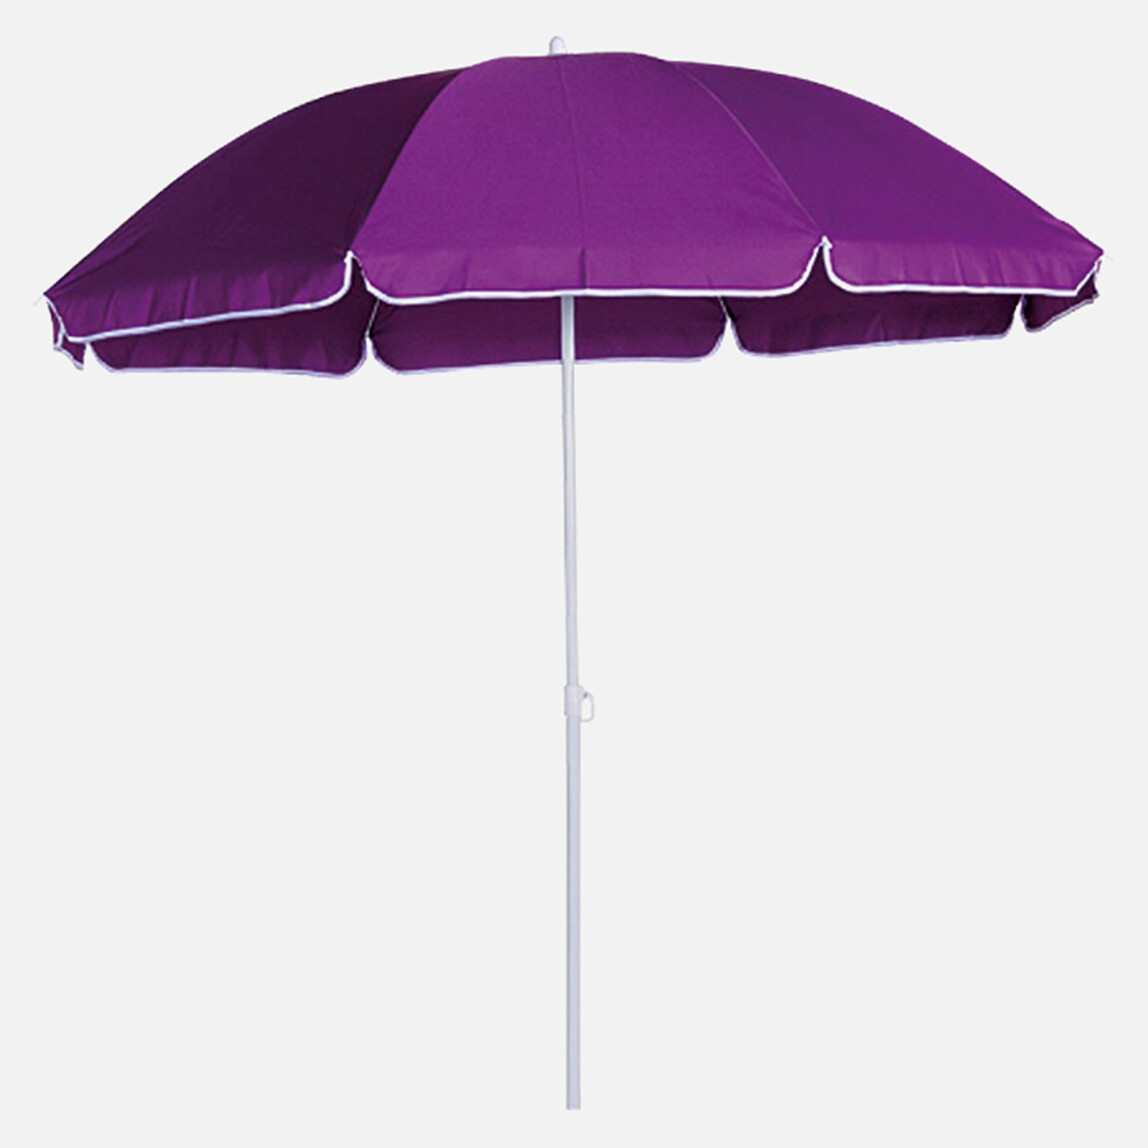    Sunfun Provence II Şemsiye Mor 200 cm  